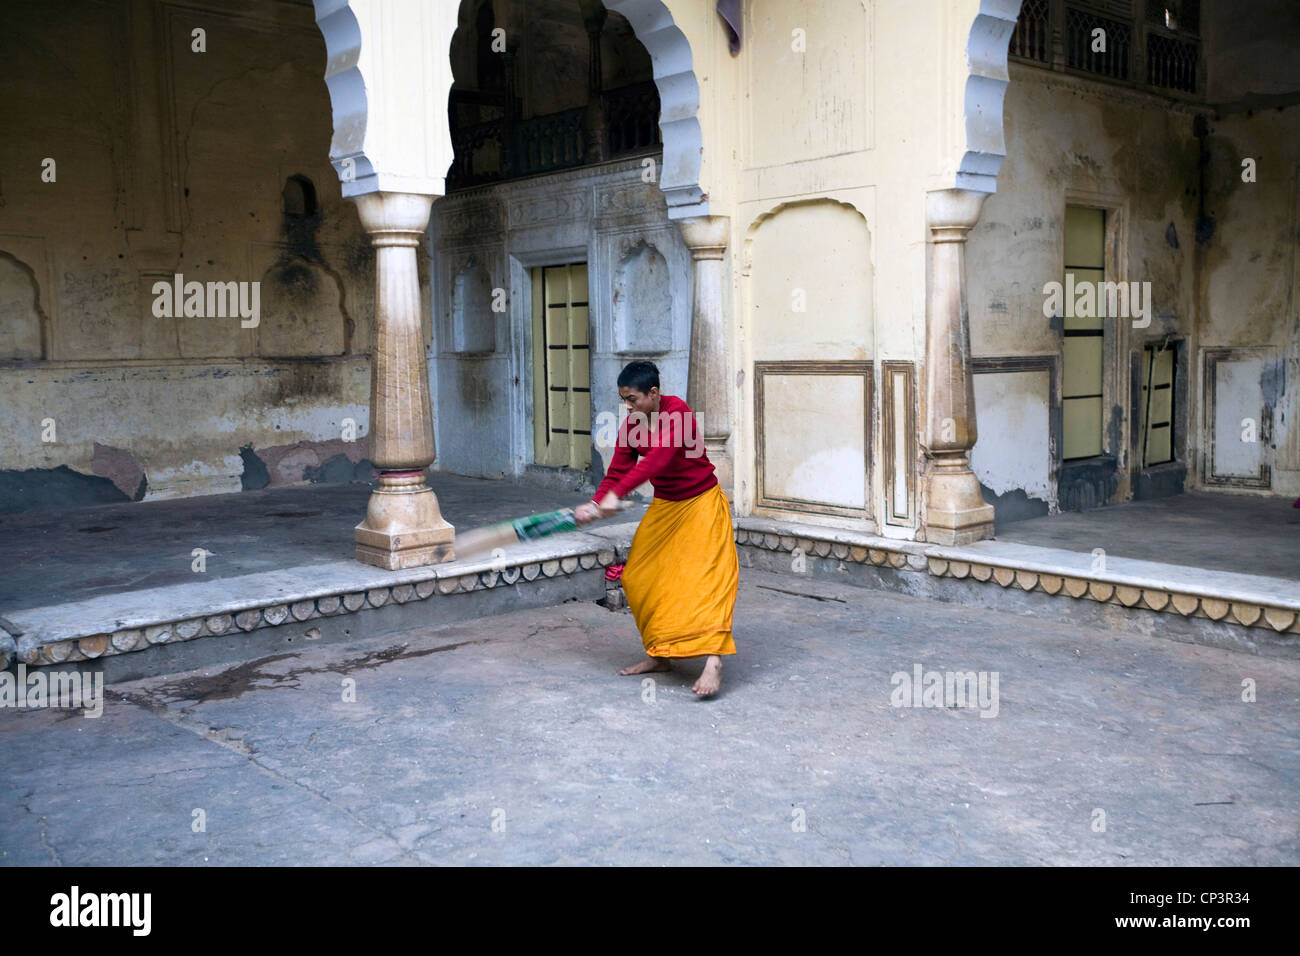 Los chicos jugar cricket dentro de uno de los edificios de la Surya Mandir (conocido como el Templo del mono), Jaipur, India Foto de stock